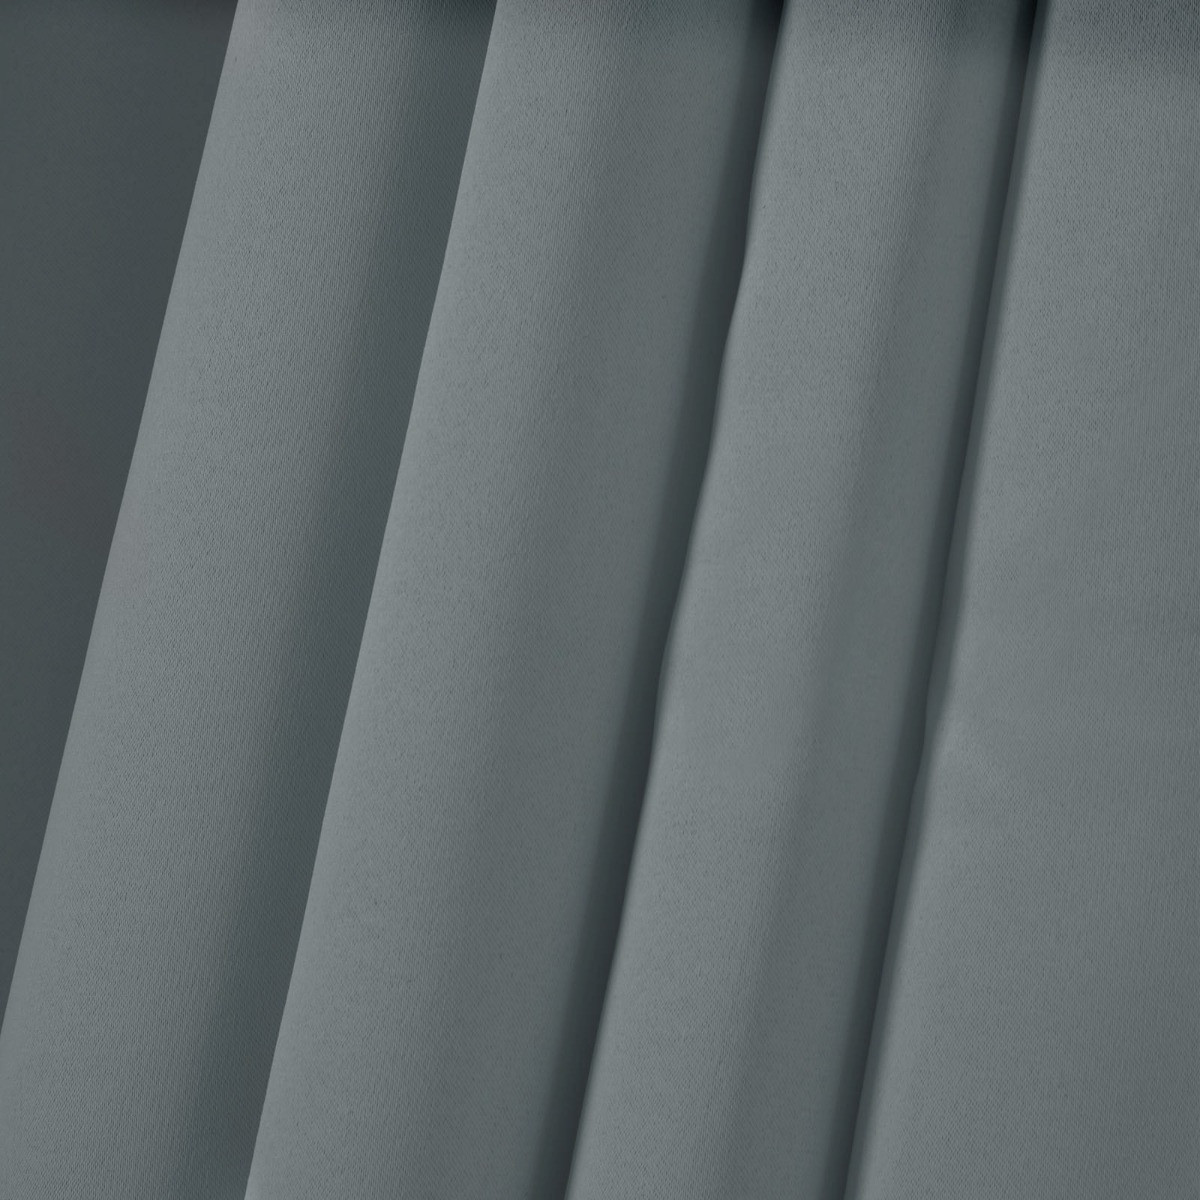 Dreamscene Pencil Pleat Blackout Curtains, Grey - 117 x 137cm (46